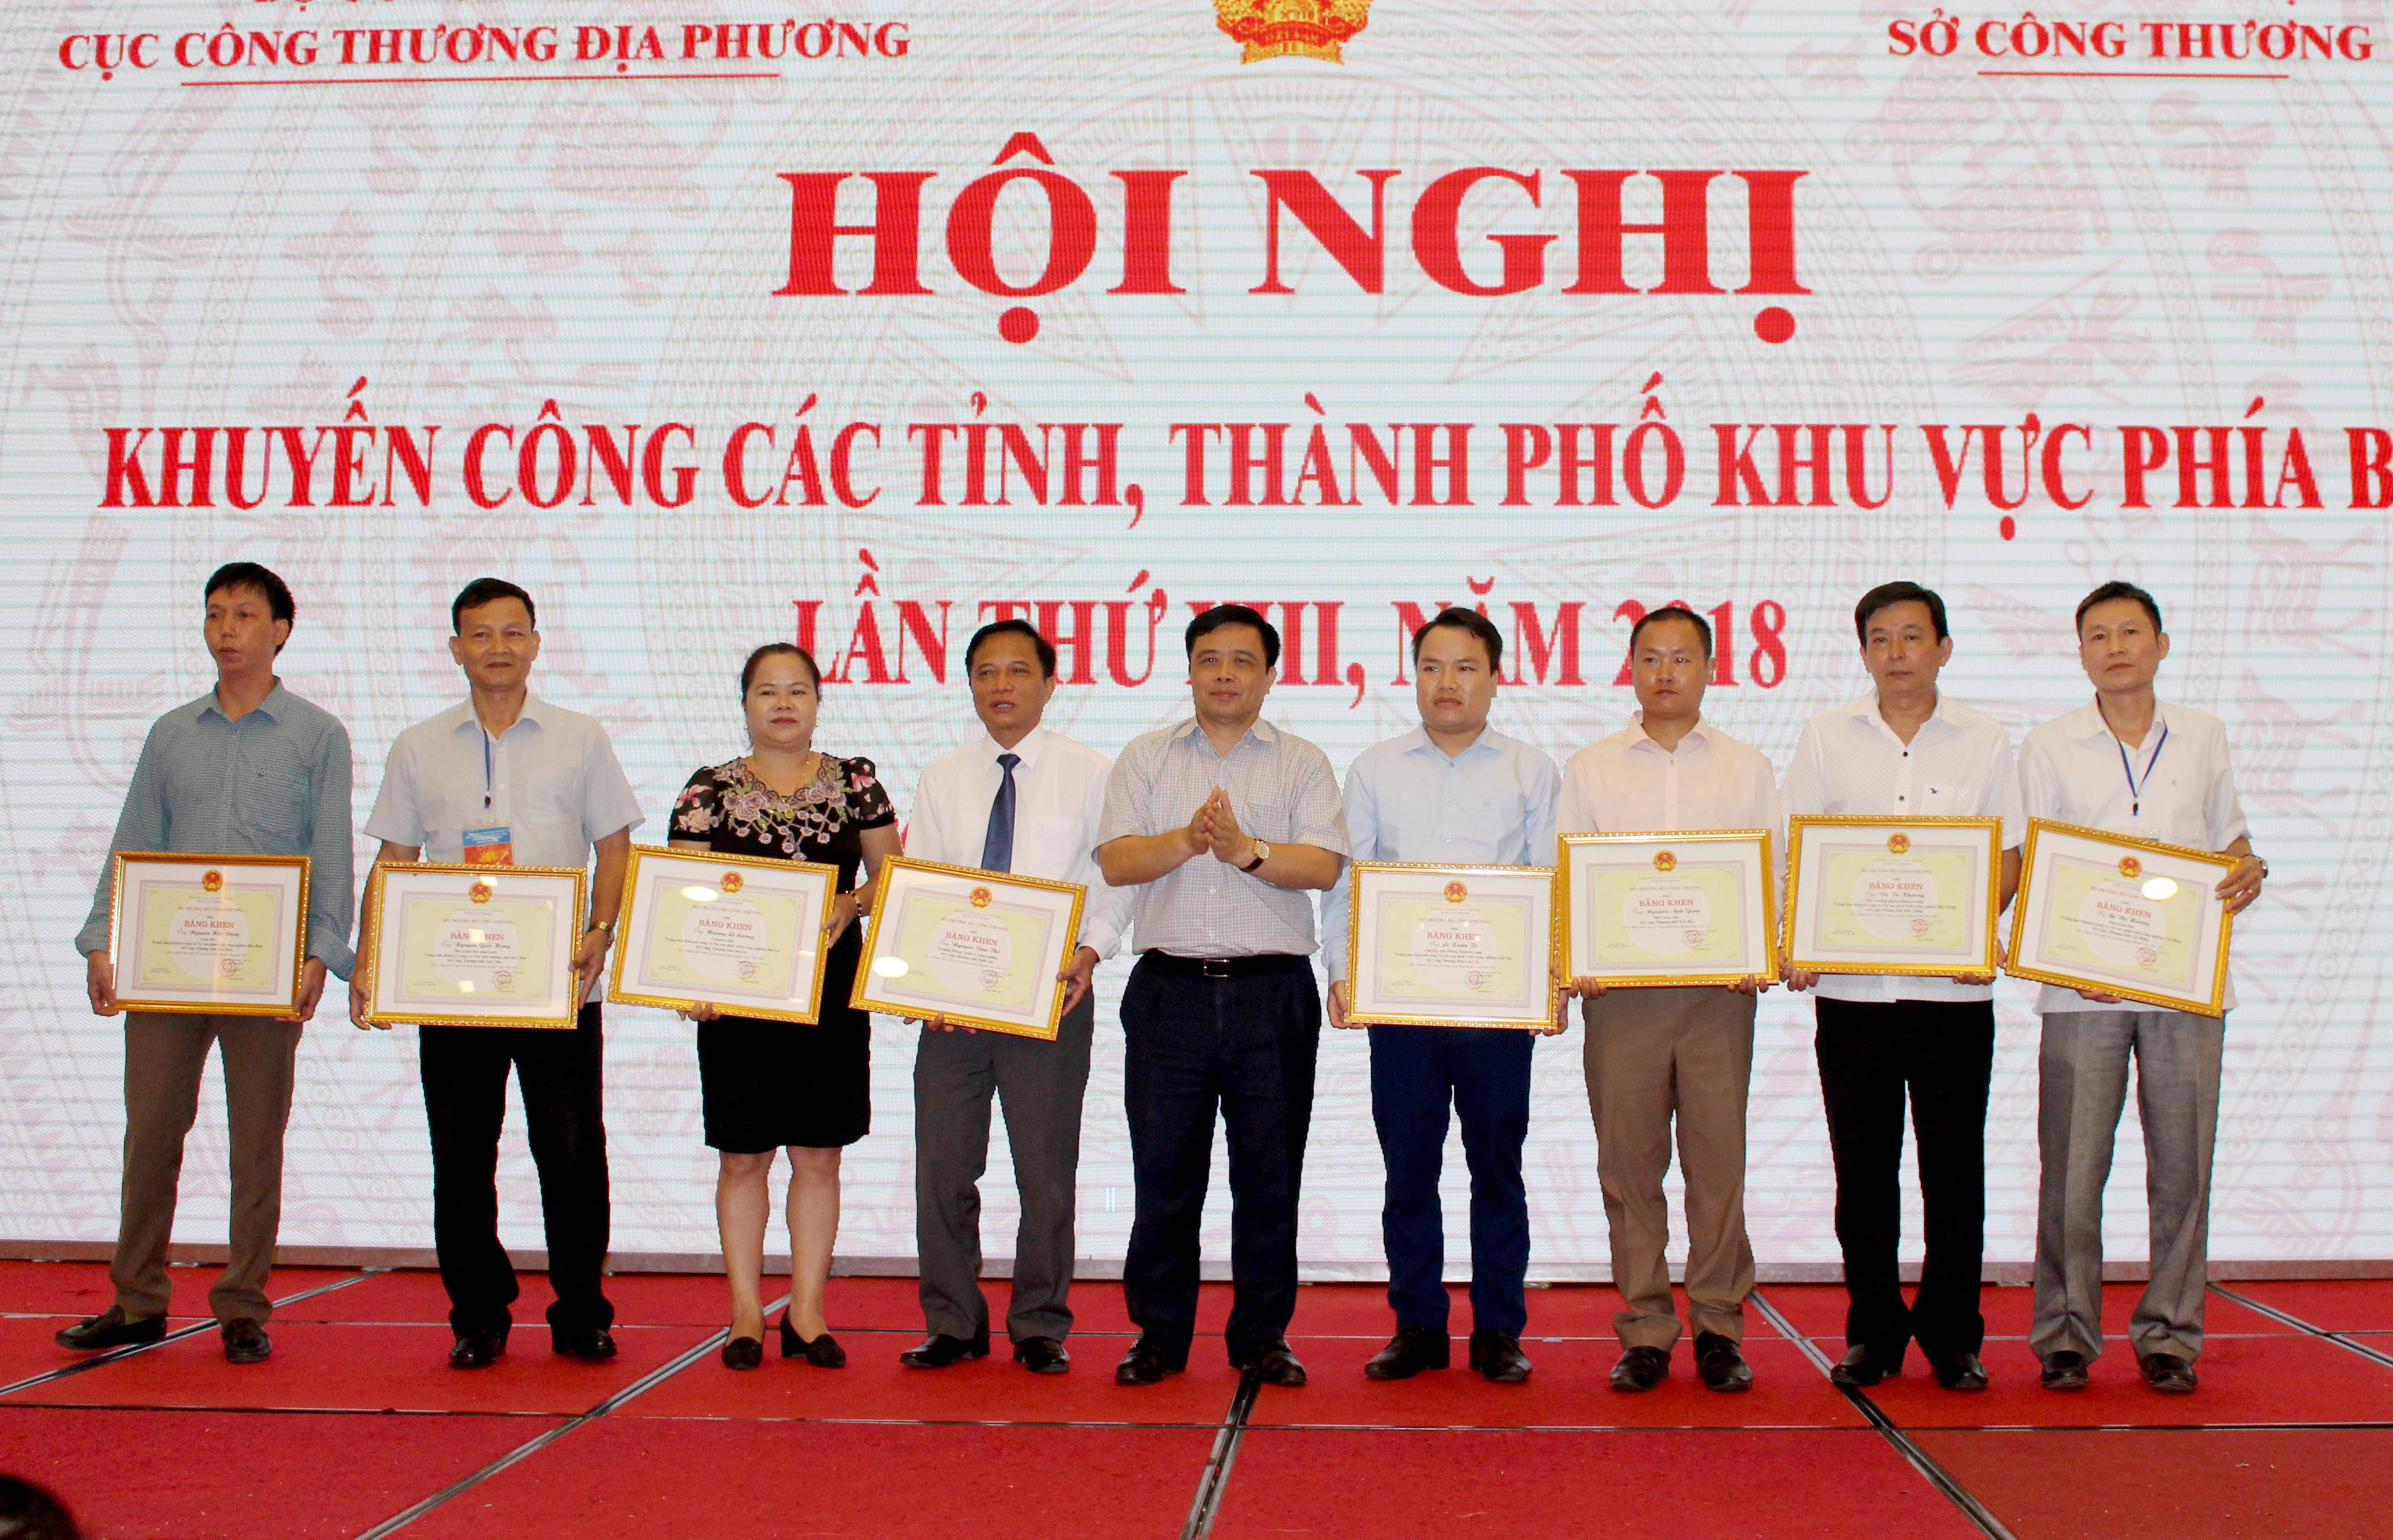 Đồng chí Huỳnh Thanh Điền trao tặng bằng khen của Bộ Công thương cho các cá nhân xuất sắc,ảnh Đinh Nguyệt